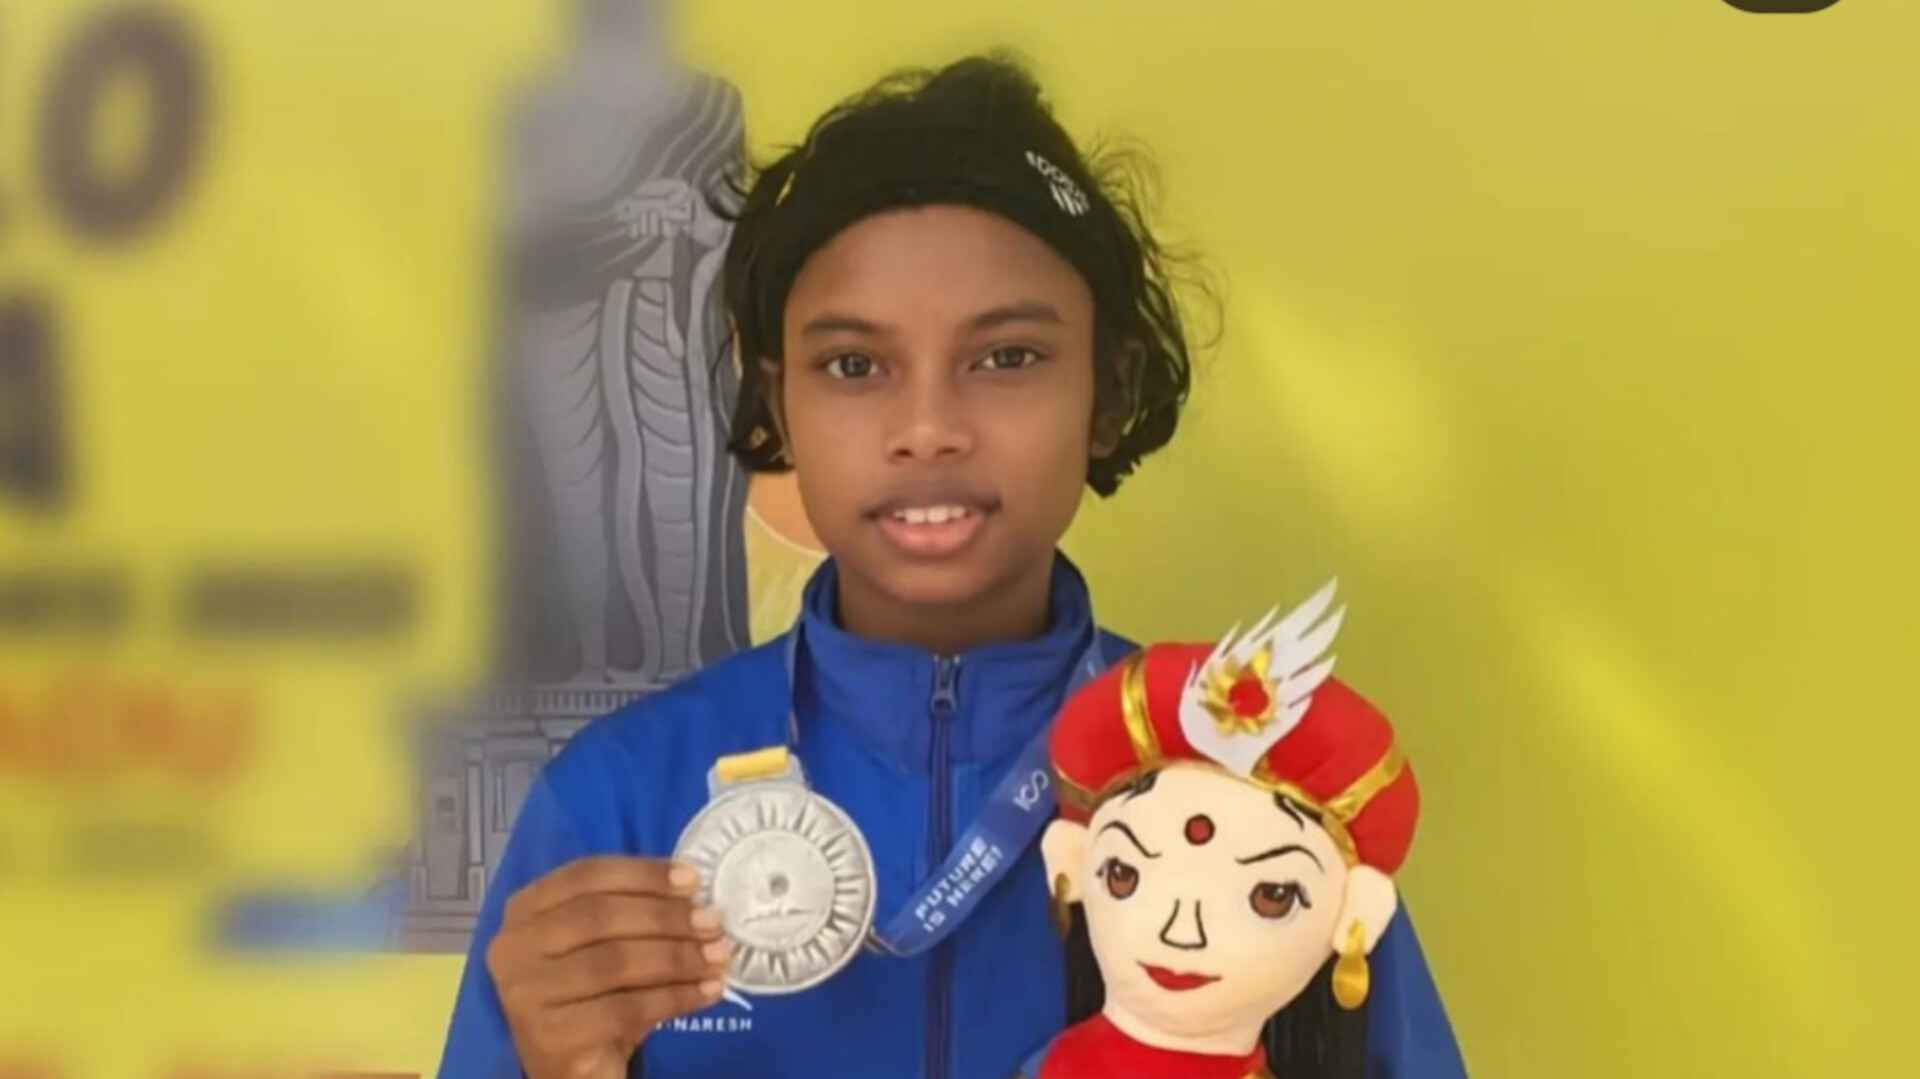 प्रीतिस्मिता भोई ने विश्व युवा चैंपियनशिप में क्लीन एवं जर्क विश्व रिकॉर्ड बनाया, जीता स्वर्ण पदक